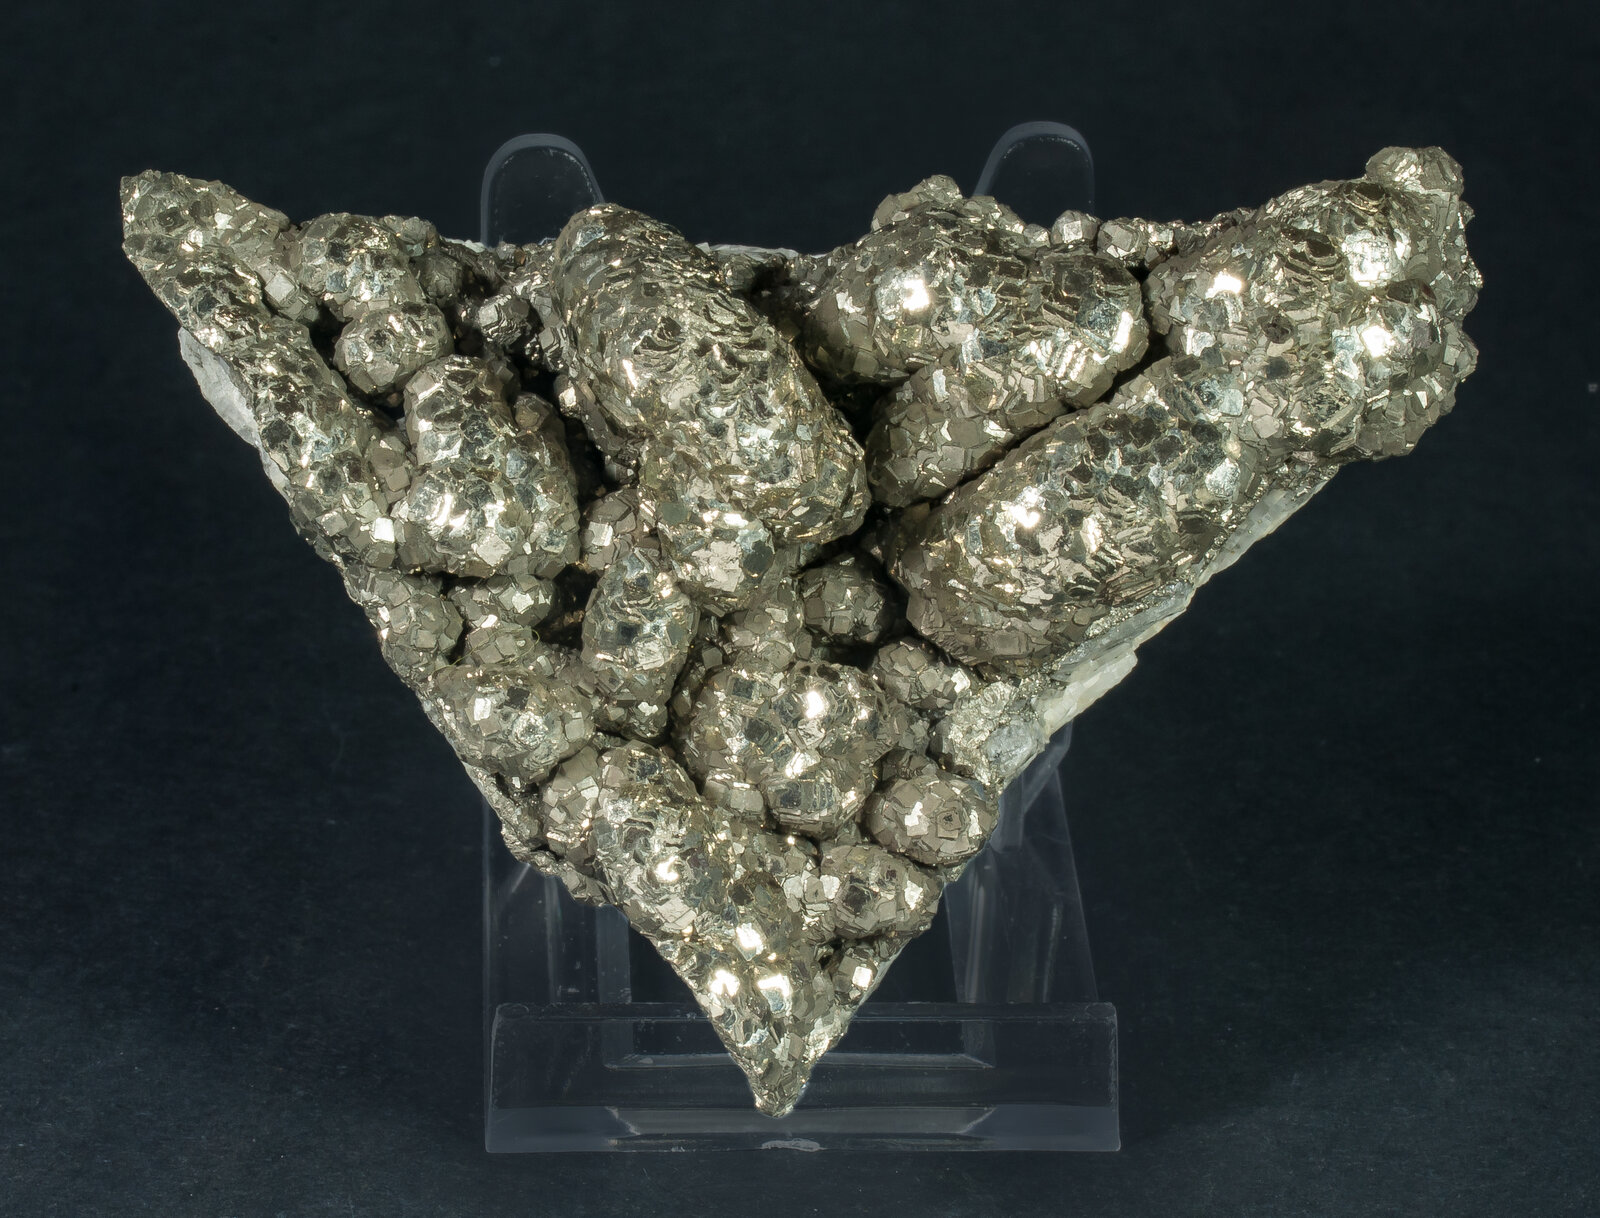 specimens/s_imagesAO9/Pyrite-ELP46AO9f.jpg